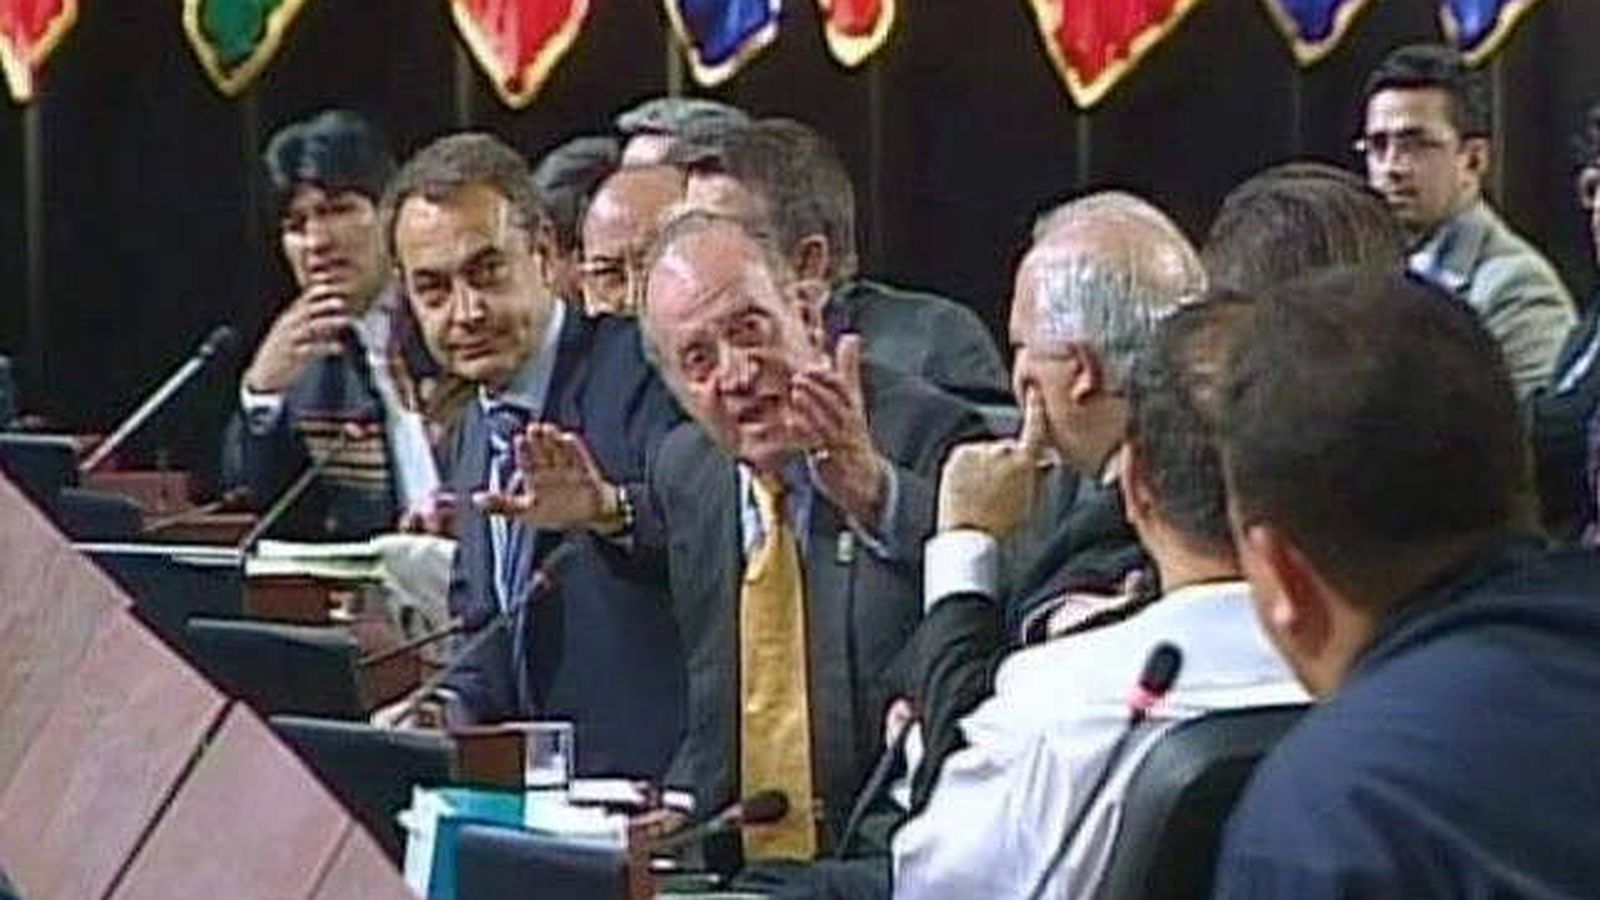 Foto: Aquella vez que el rey Juan Carlos le gritó el famoso "¿Por qué no te callas?" al fallecido presidente de Venezuela, Hugo Chávez | Foto: EFE